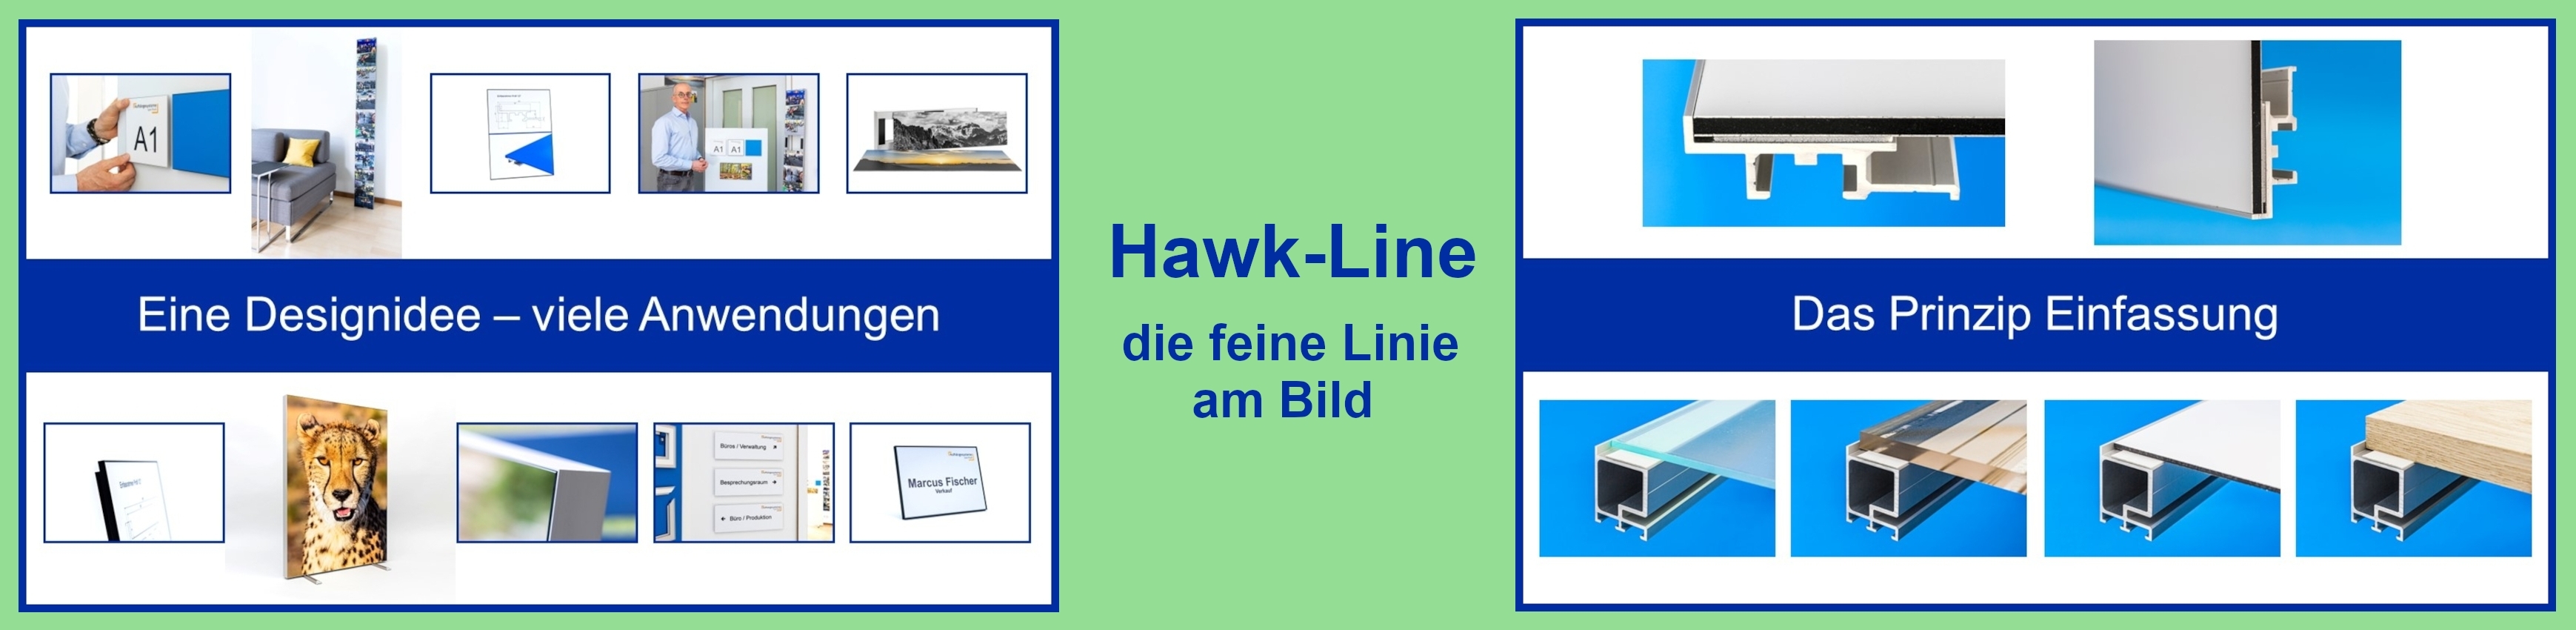 Start_Hawk-Line.3478x850.2